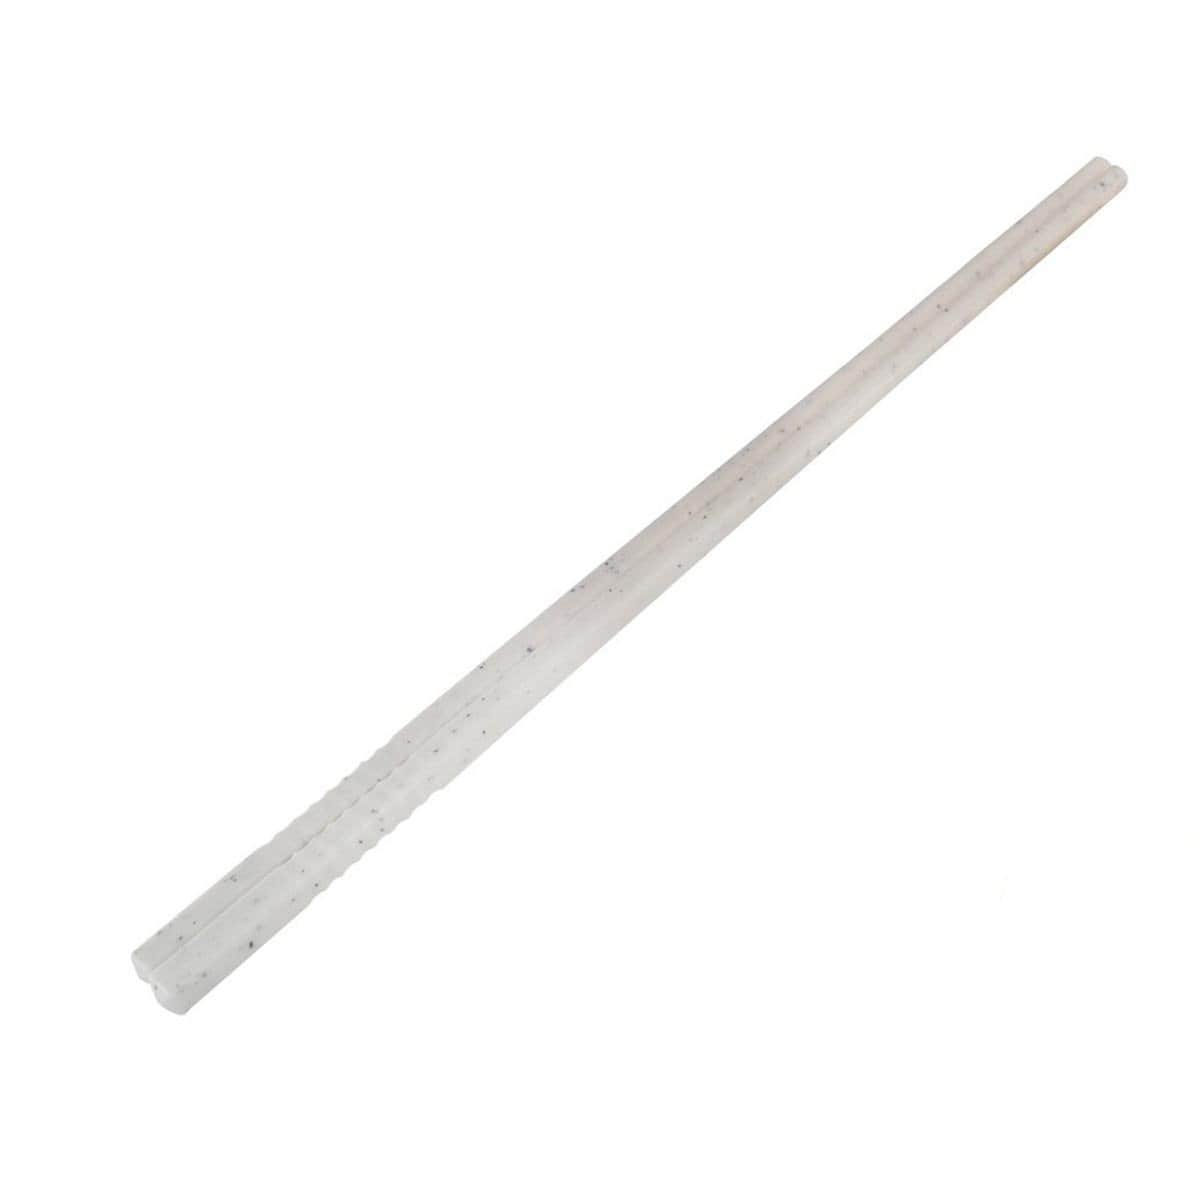 C01 Felton Chopsticks 10.5" (12pcs)